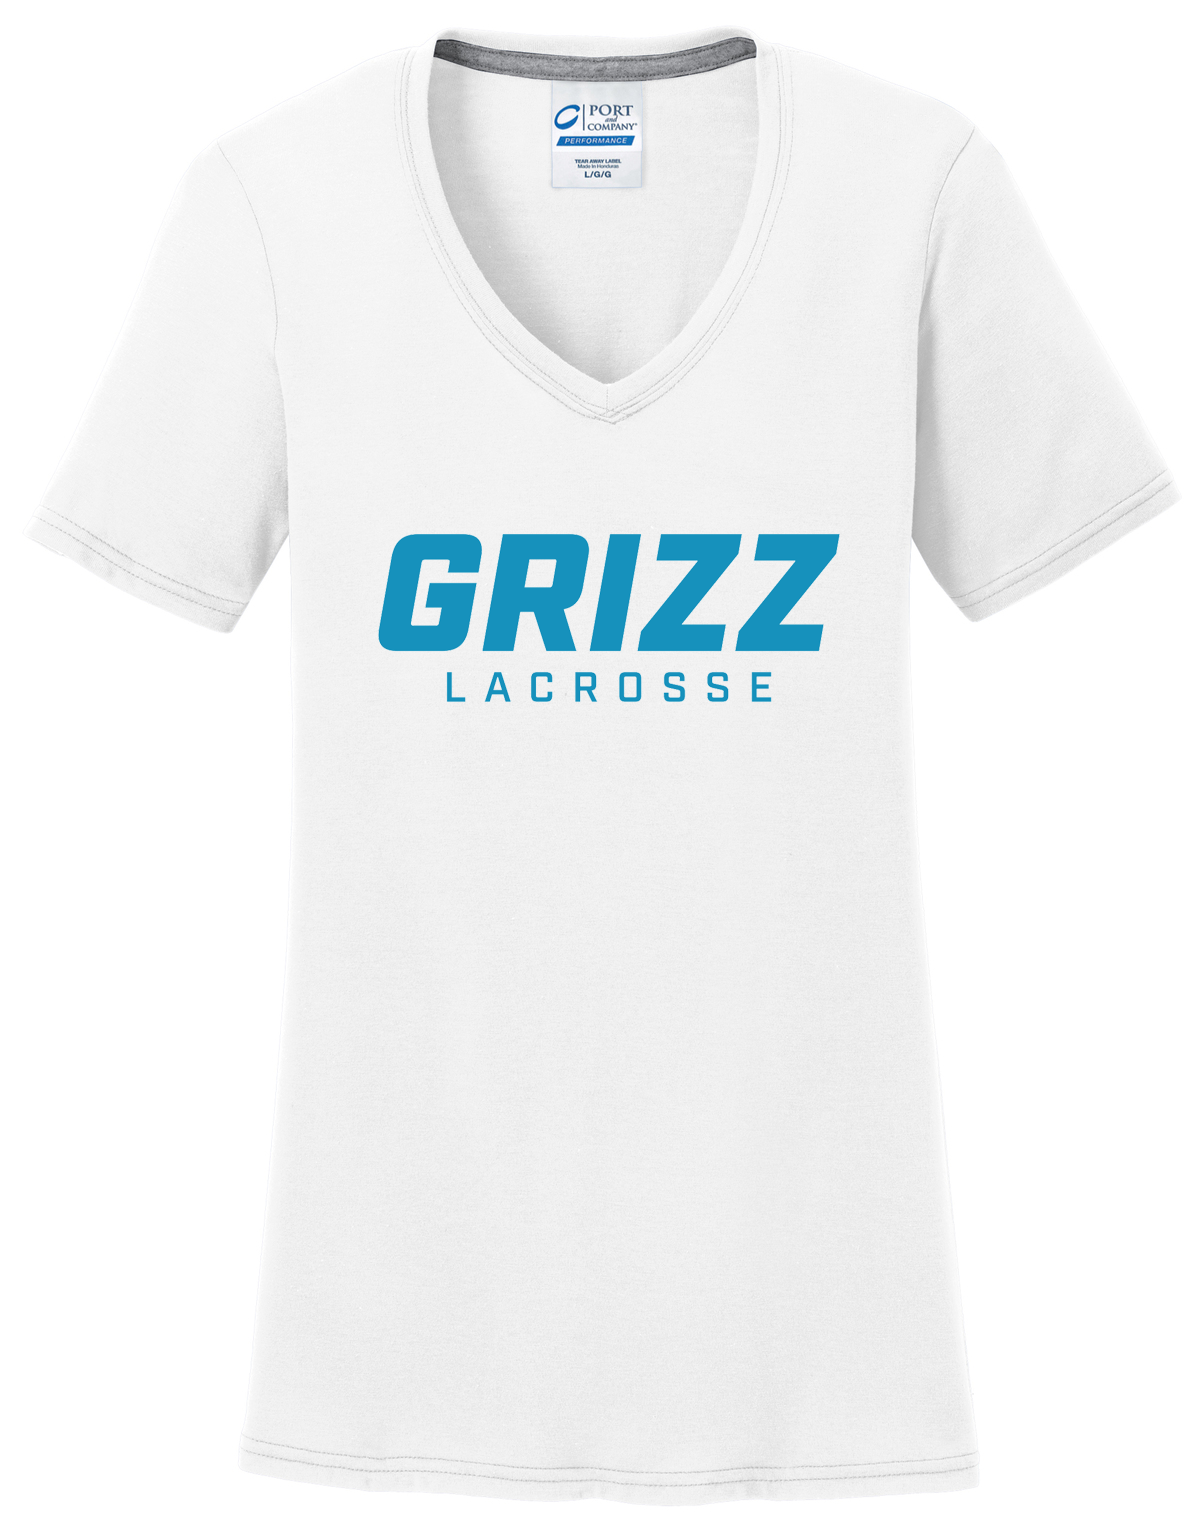 Grizz Lacrosse Women's T-Shirt